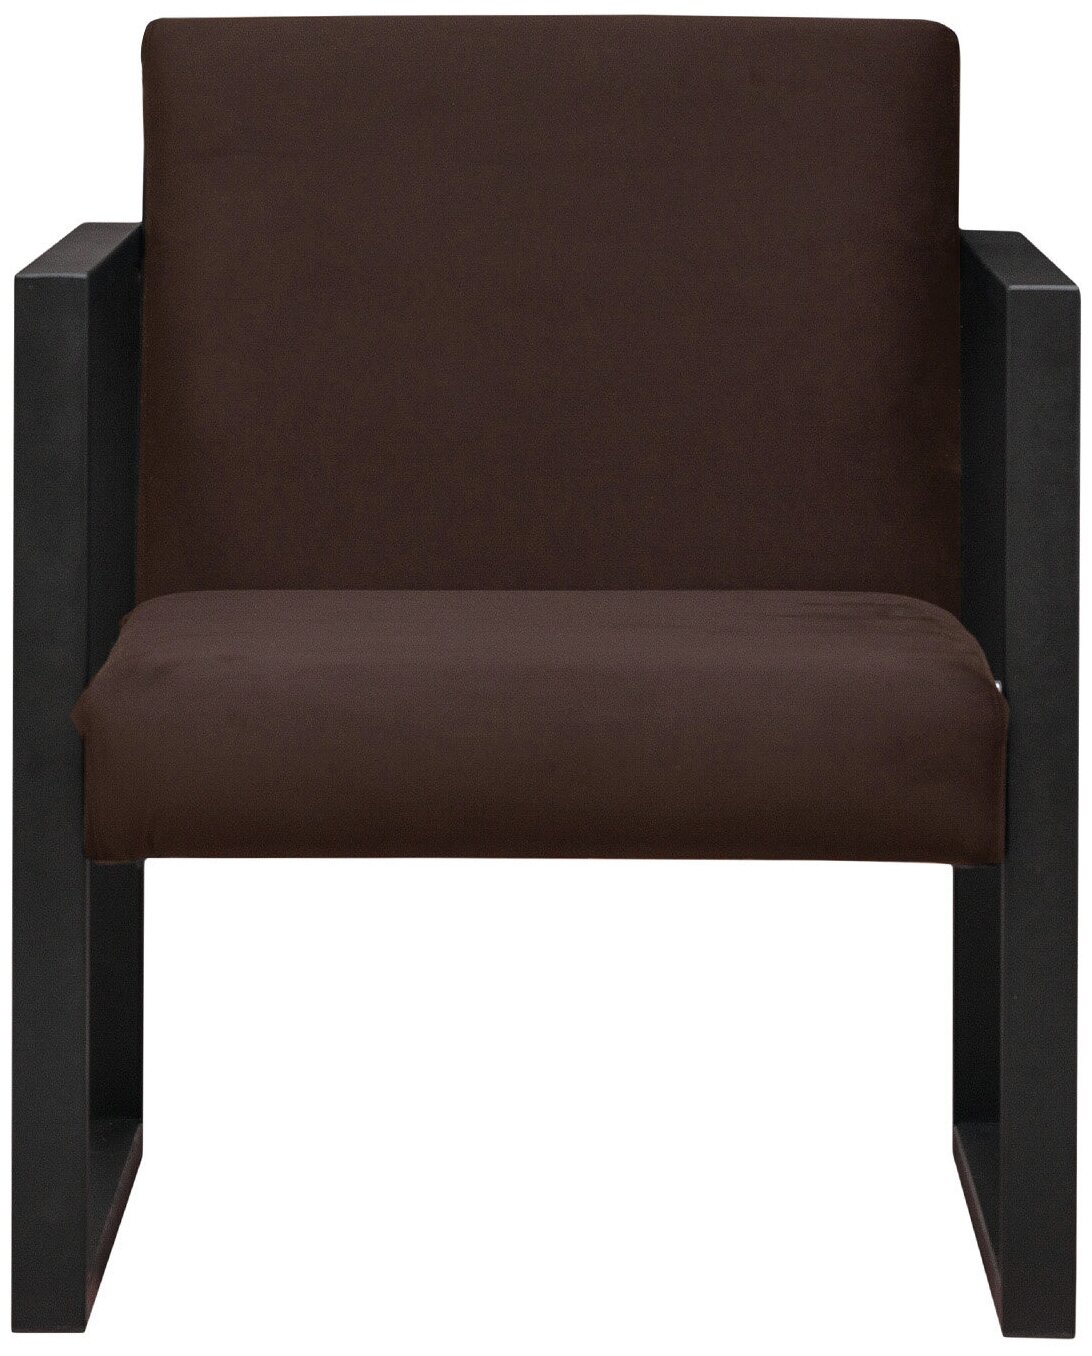 Кресло лофт Abyssinian 70х75х85 см, обивка: велюр, цвет: коричневый, на кухню, в офис, в прихожую, на балкон, в кафе, в салон красоты, прямой